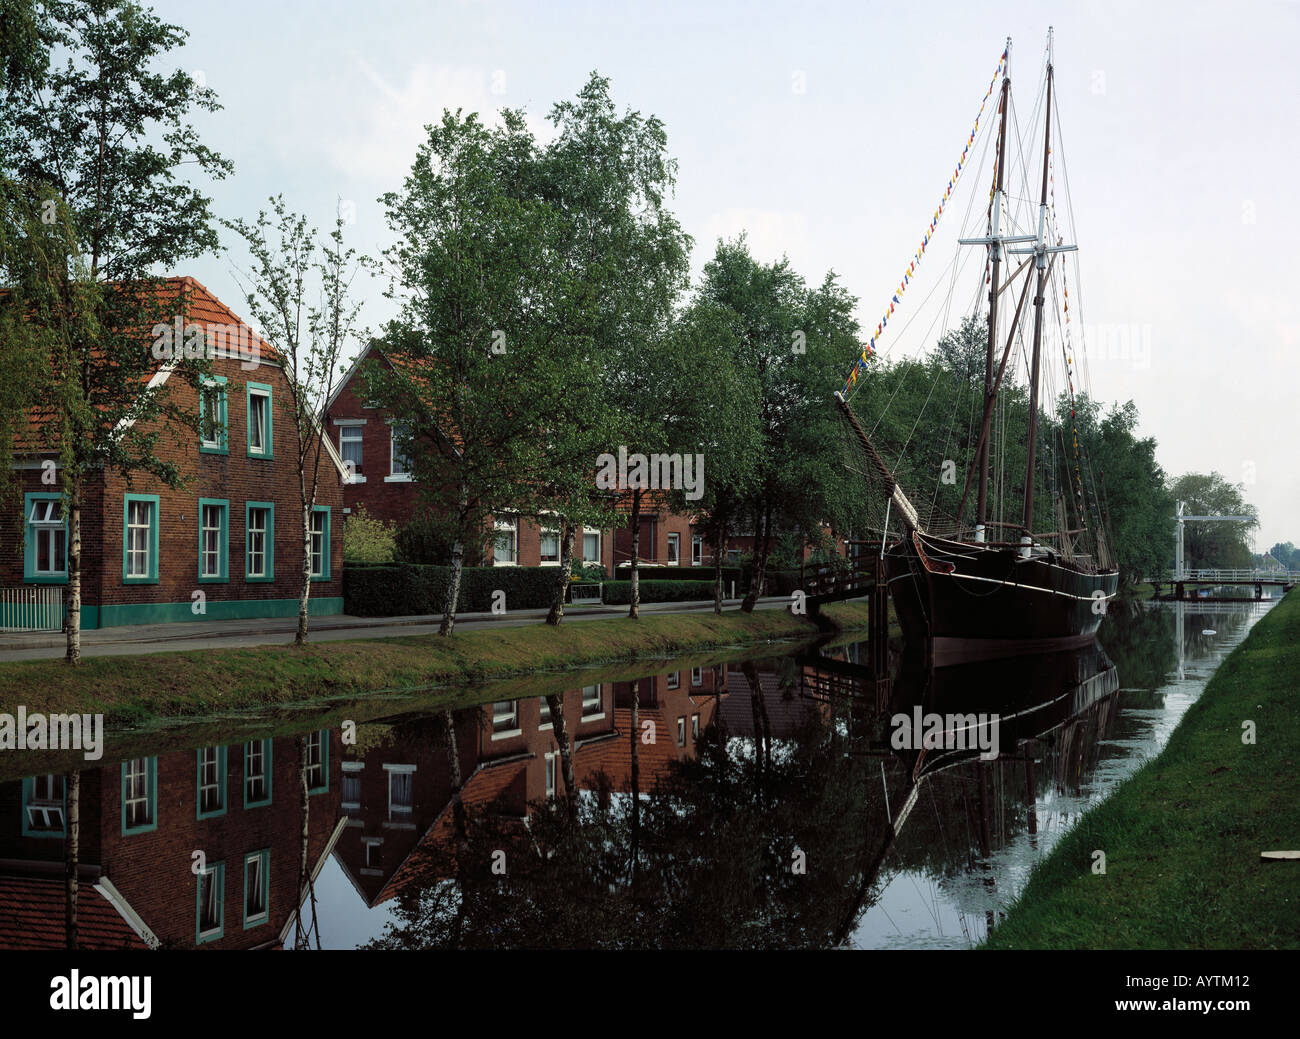 Hauptkanal mit Museumsschiff, Haeuser an einem Kanal, Papenburg, Emsland, Niedersachsen Stock Photo